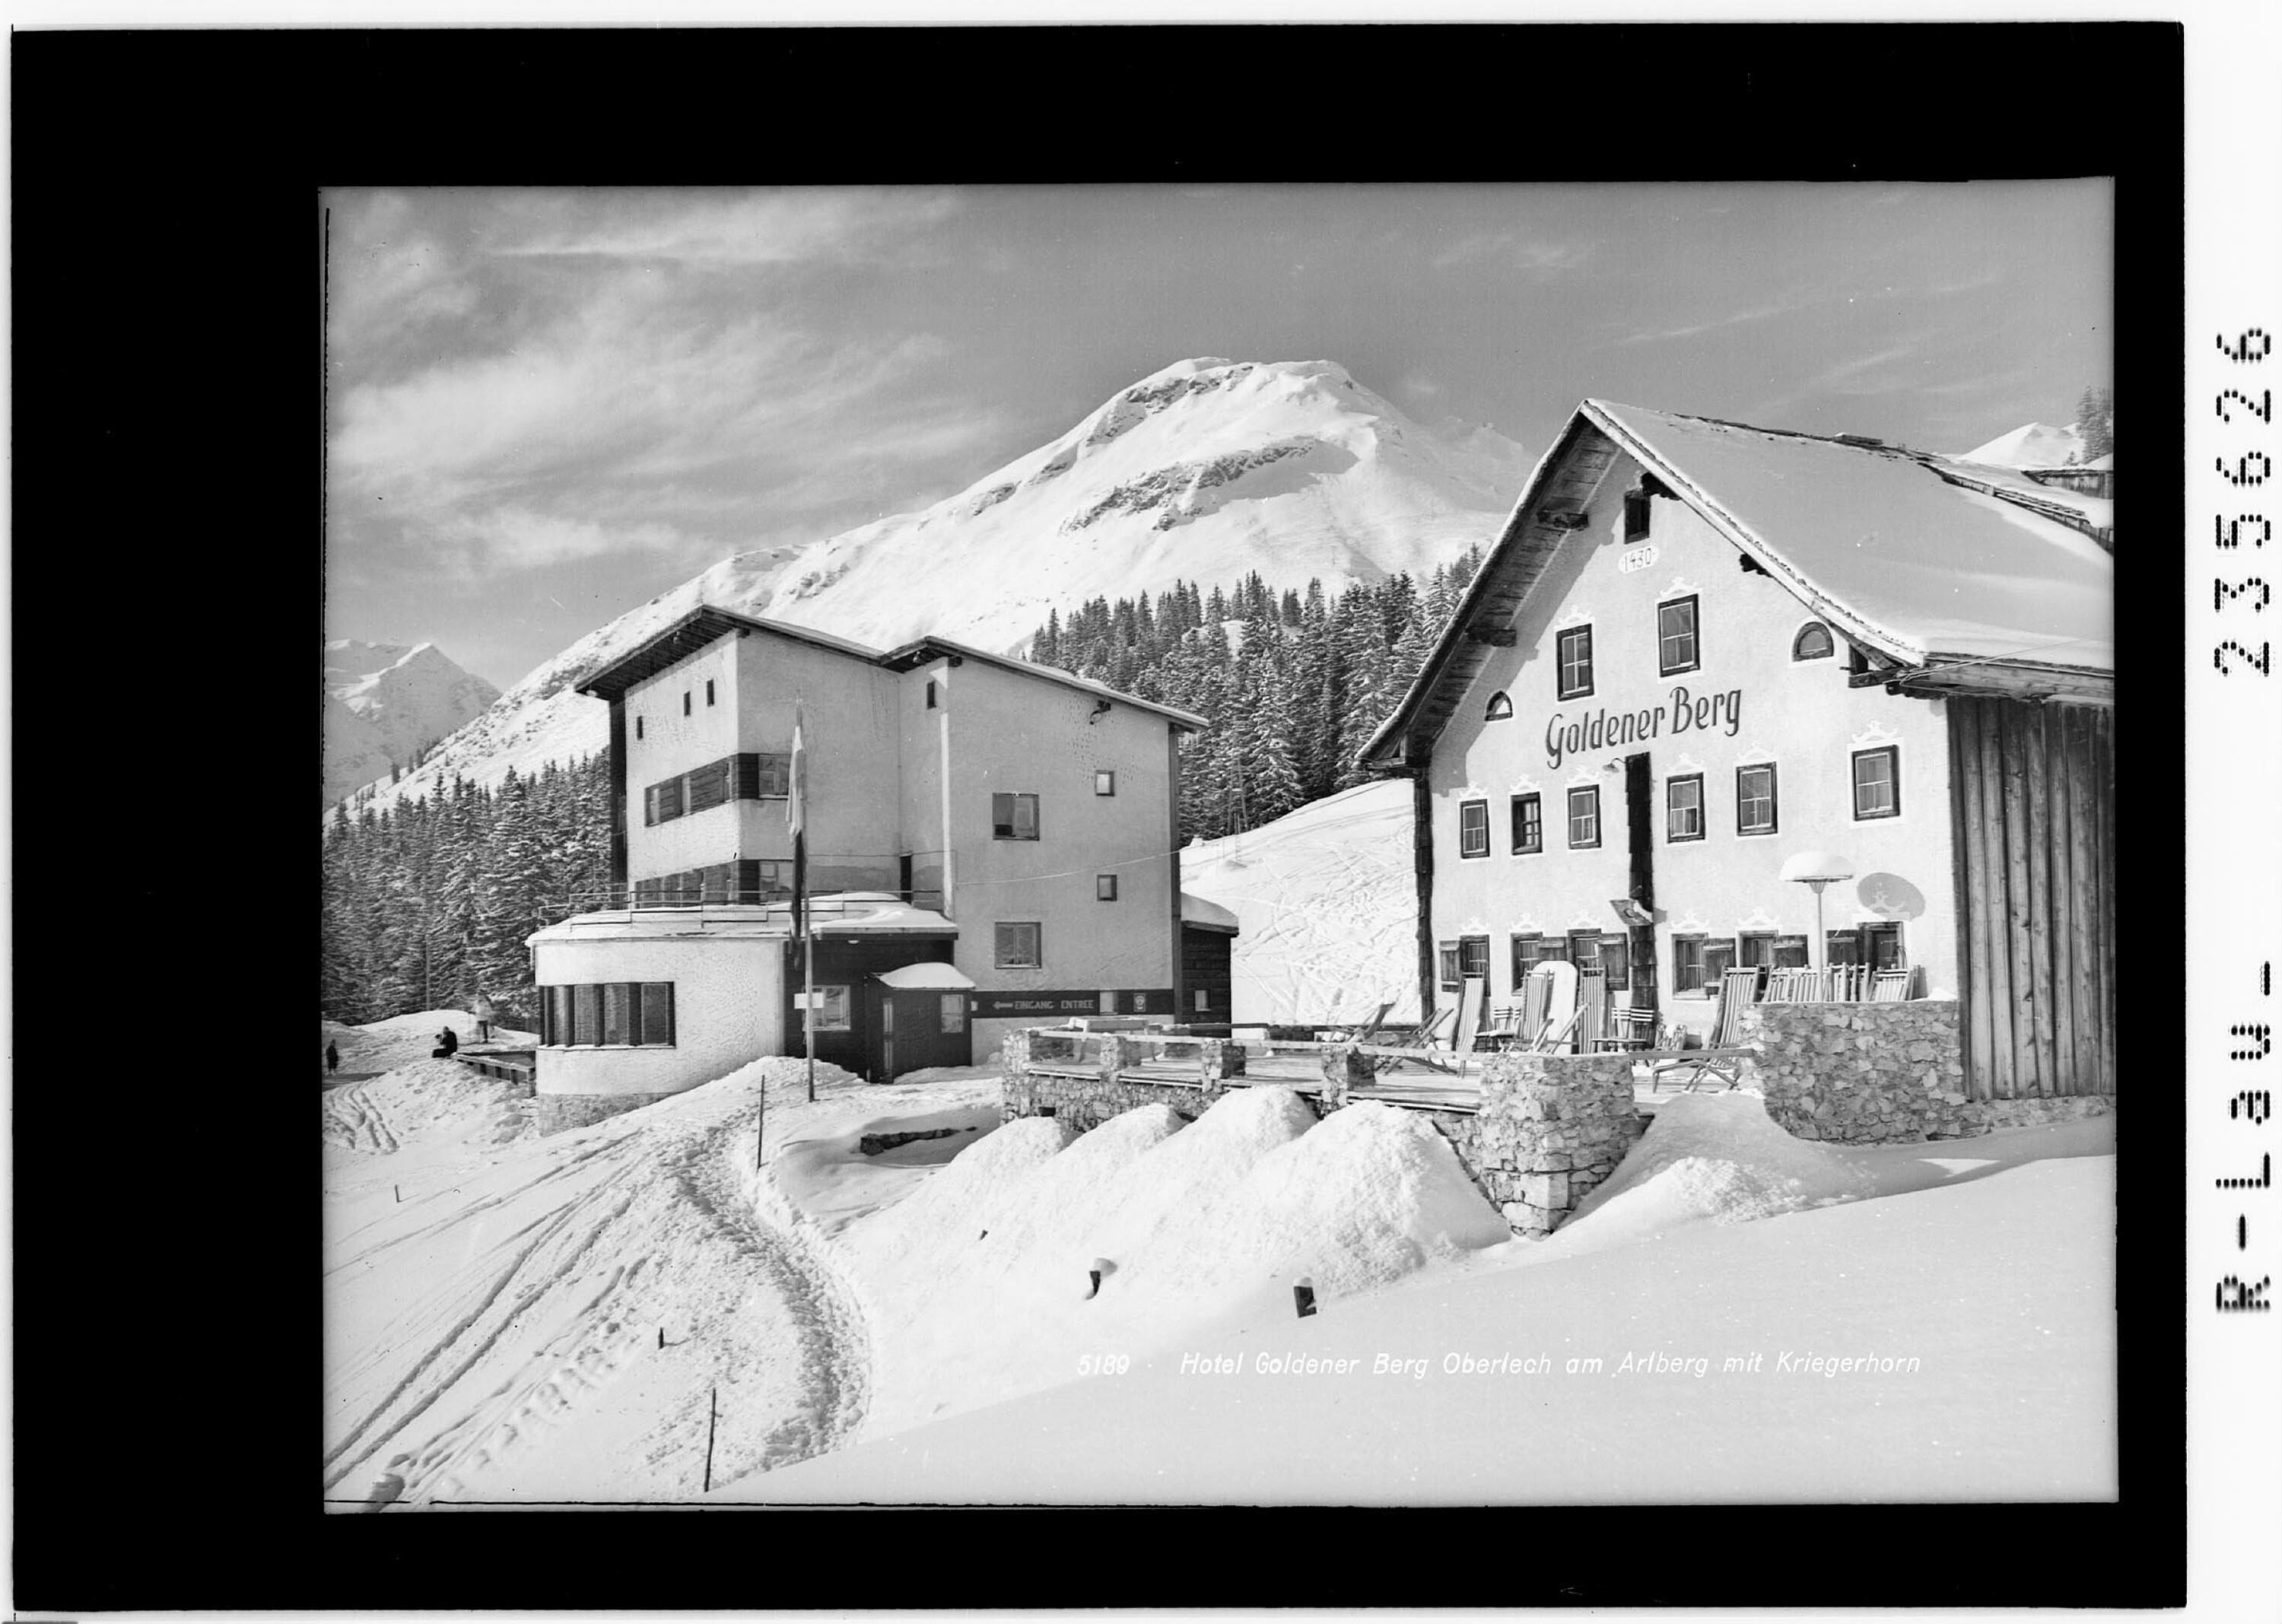 Hotel Goldener Berg / Oberlech am Arlberg mit Kriegerhorn></div>


    <hr>
    <div class=